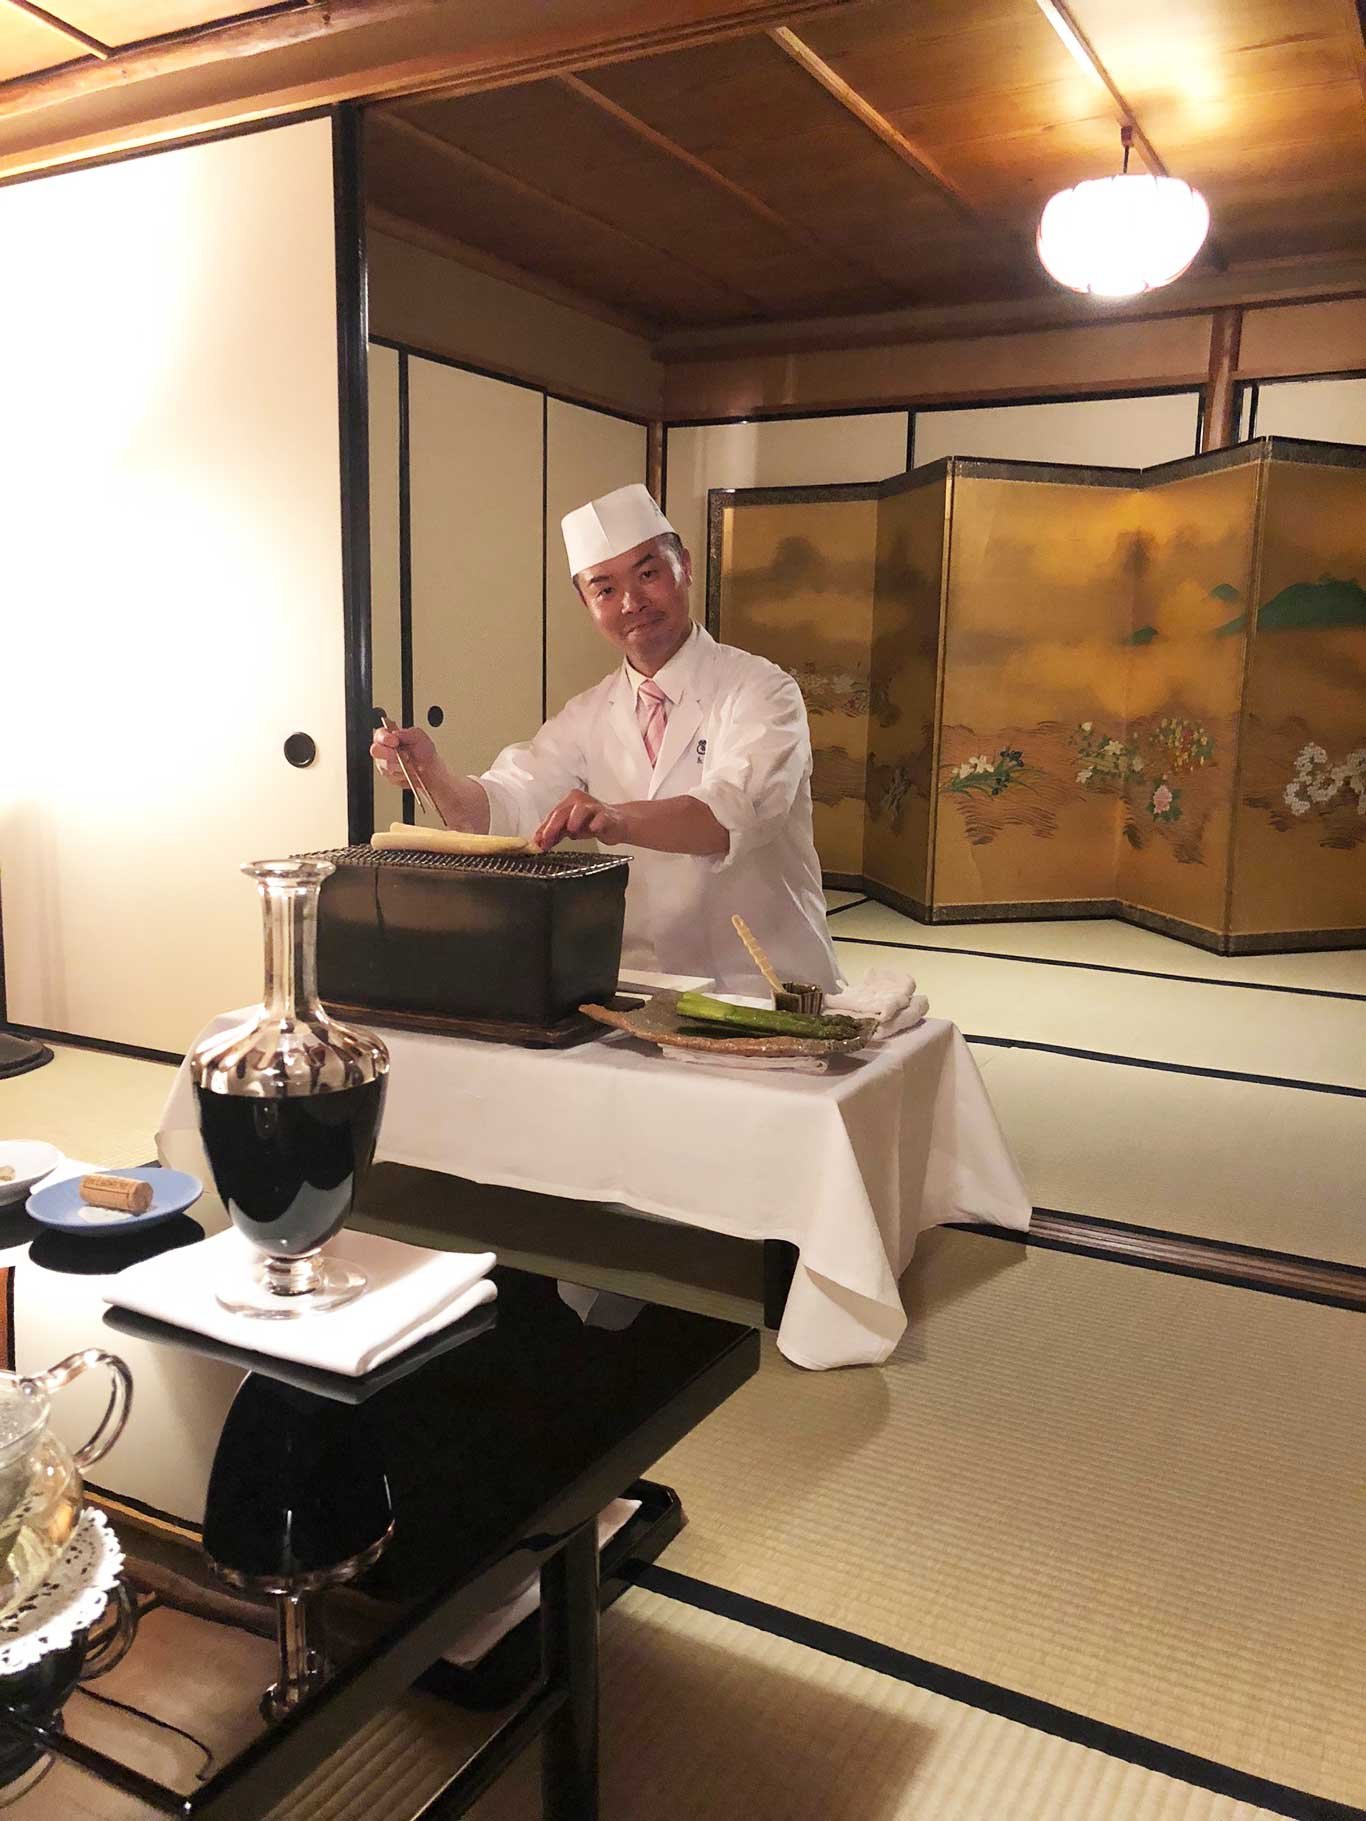 Wer hier gerne speisen möchte sollte umbedingt früh einen Tisch reservieren. Infos unter: kyoto-kitcho.com